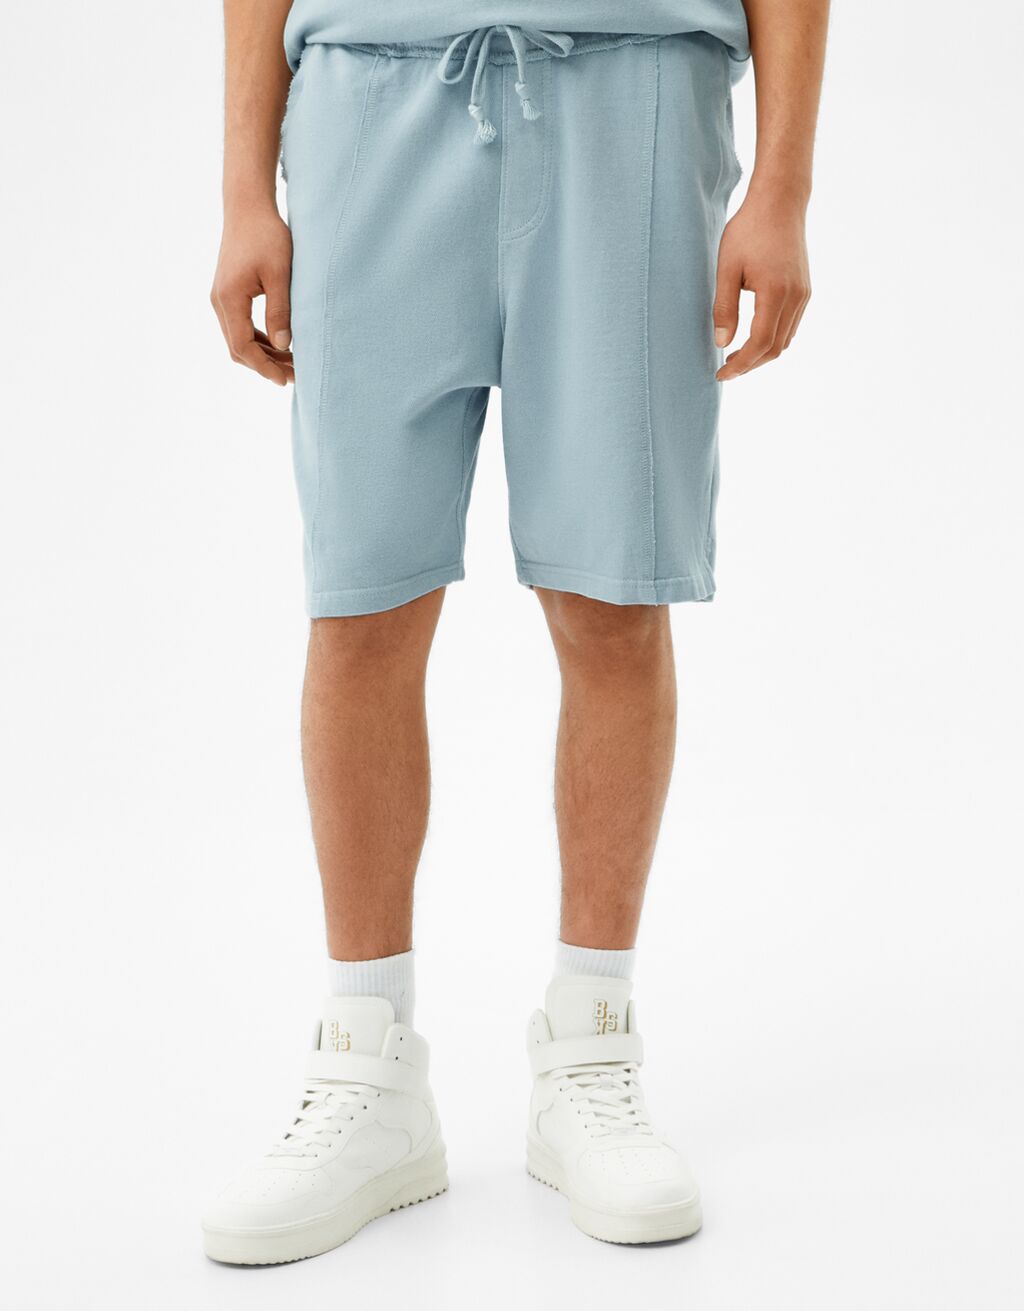 Faded plush Bermuda shorts